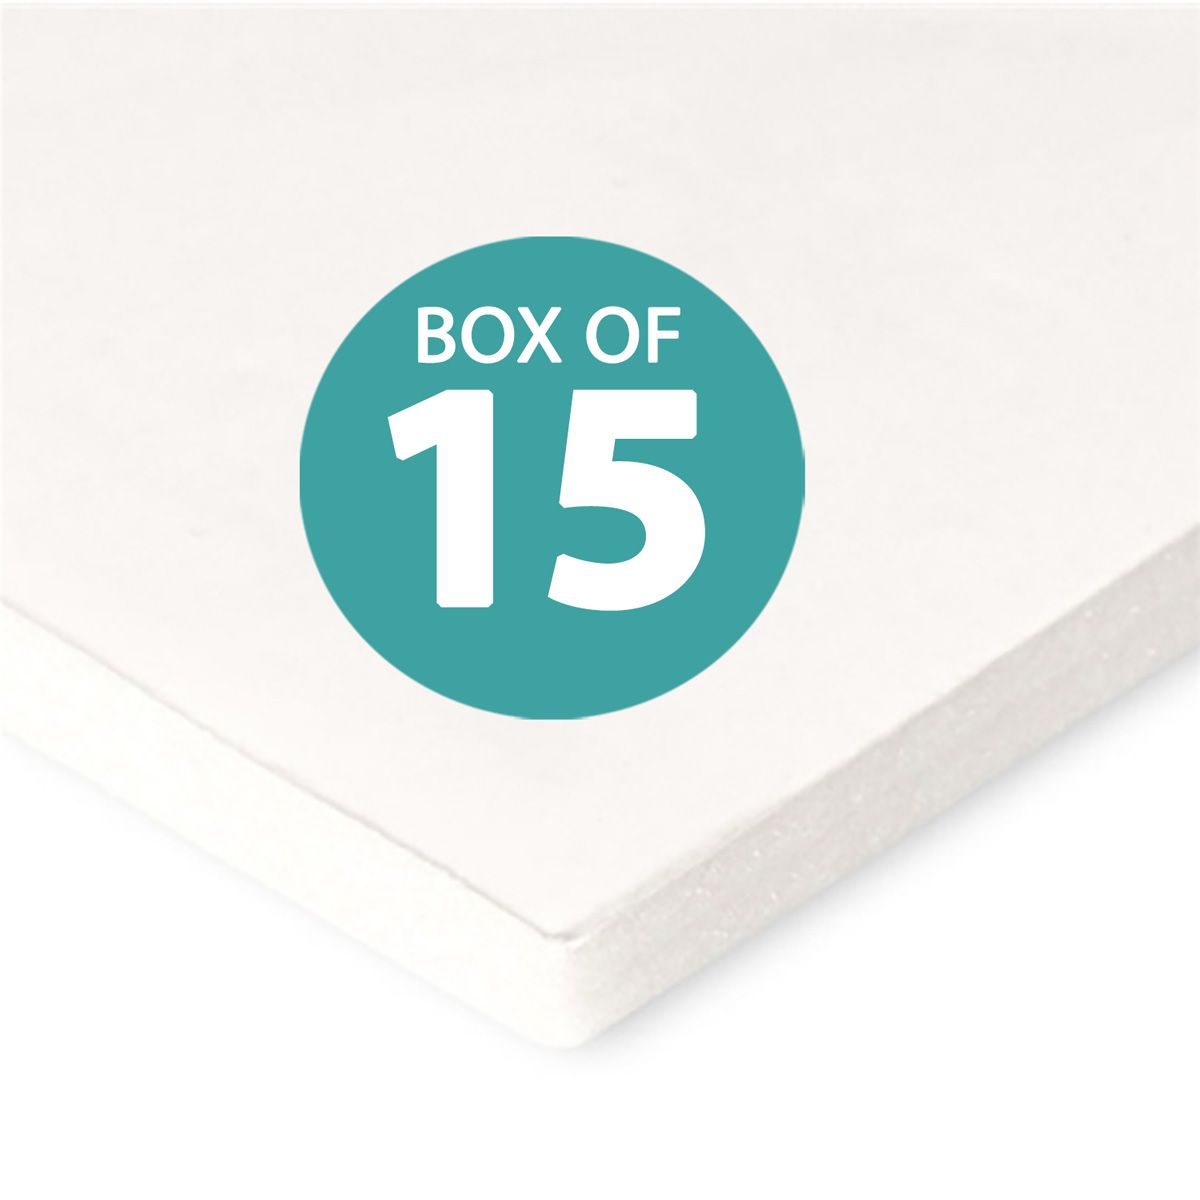 3/8 White Acid Free Buffered Foam Core Boards custom size